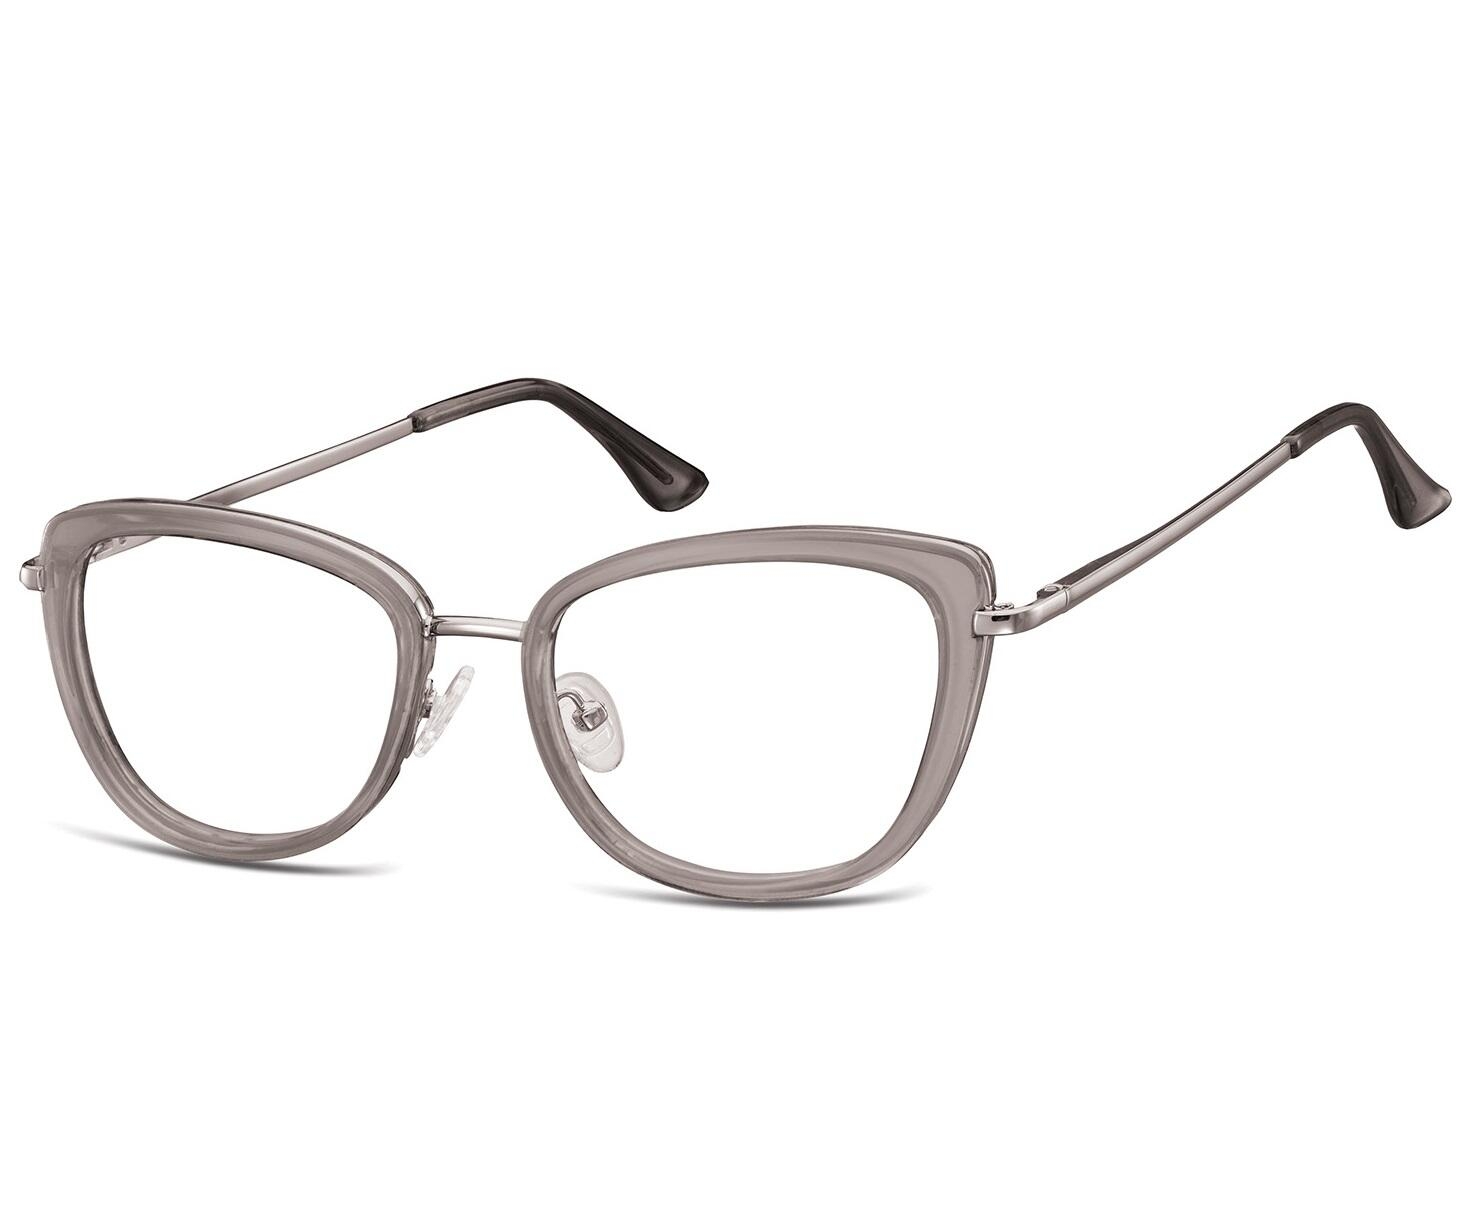 Okulary oprawki korekcyjne kocie oczy zerówki Sunoptic flex MTR-99F szaro-srebrne